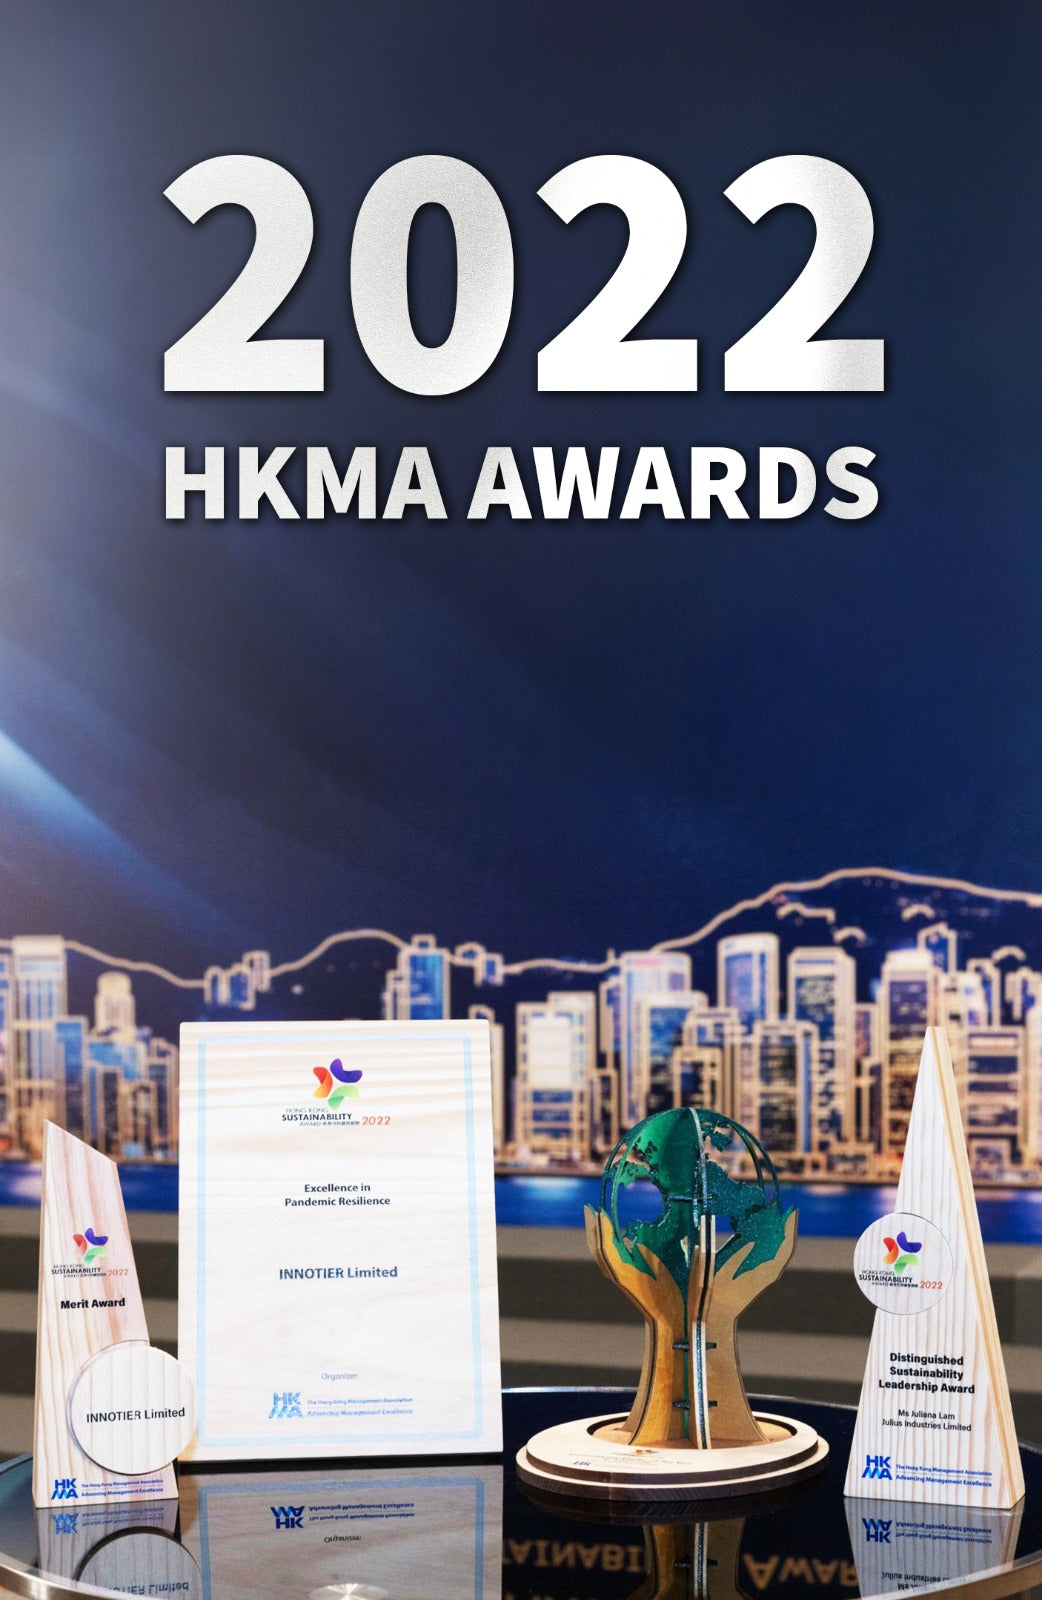 Awards_HKMA.jpg__PID:f81d5012-c213-4bda-9cda-f7e9eca236e7